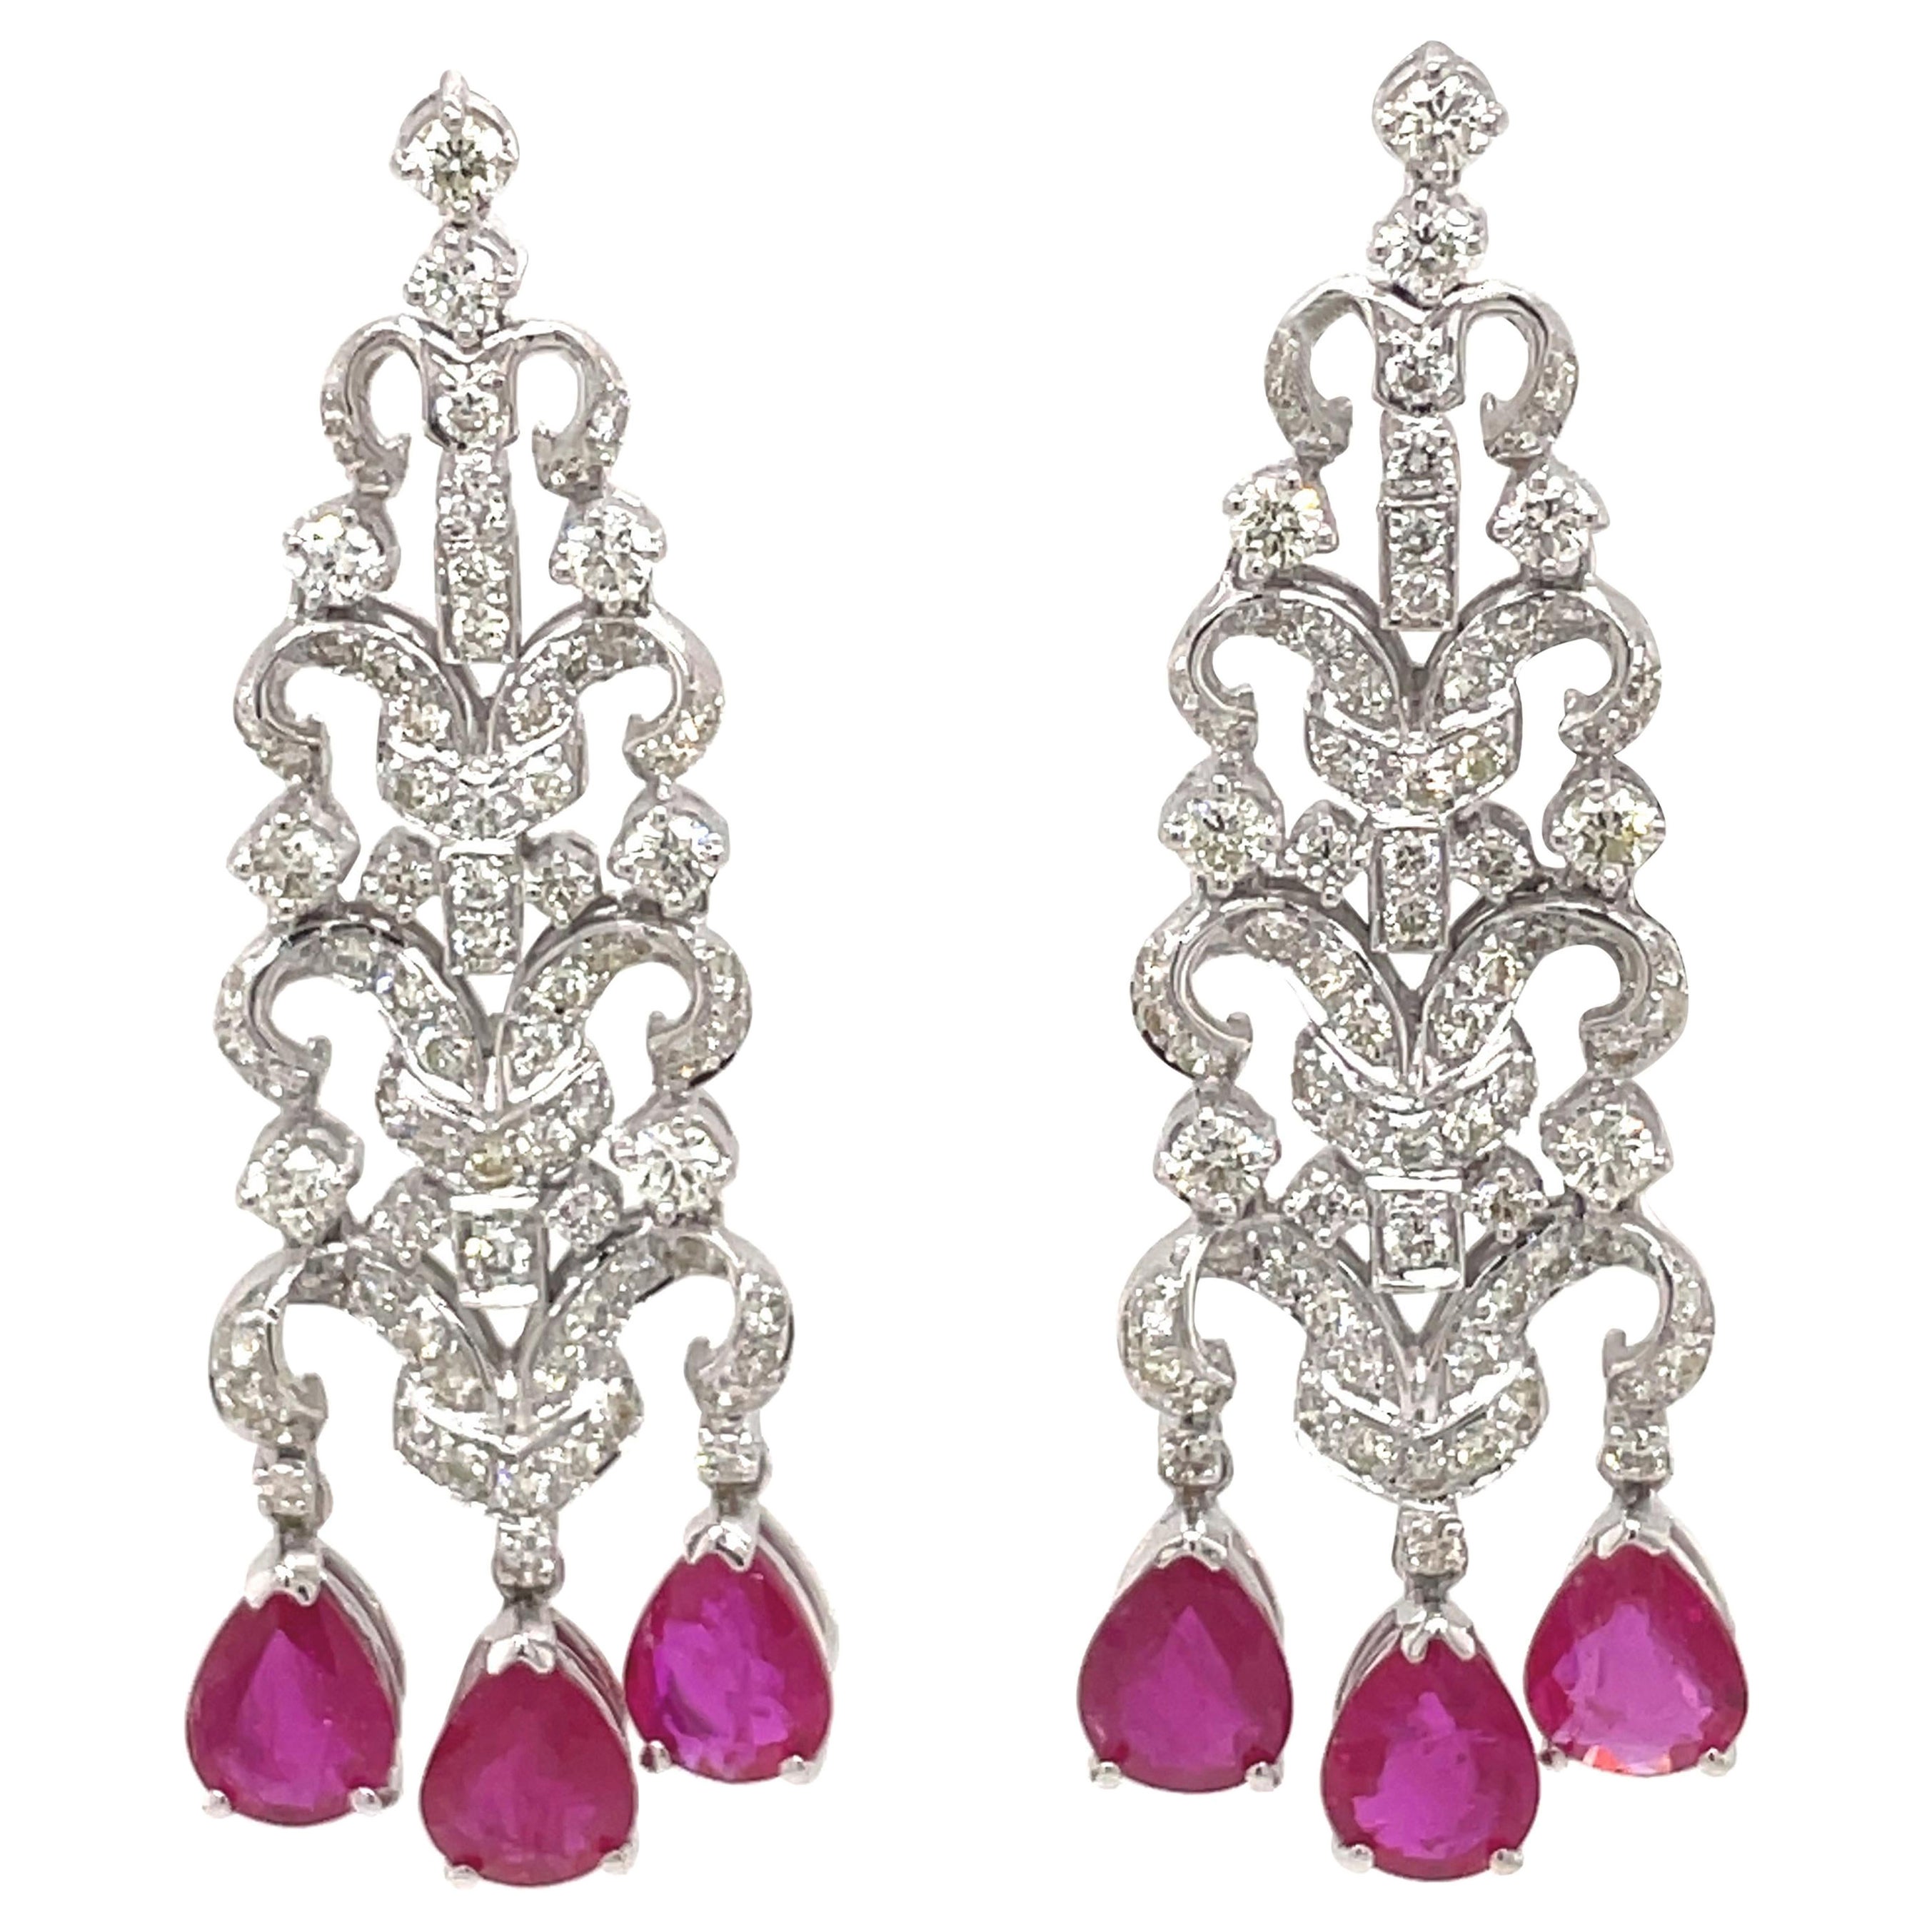 Boucles d'oreilles lustre de style édouardien en or blanc 18 carats avec rubis de 7,12 carats et diamants